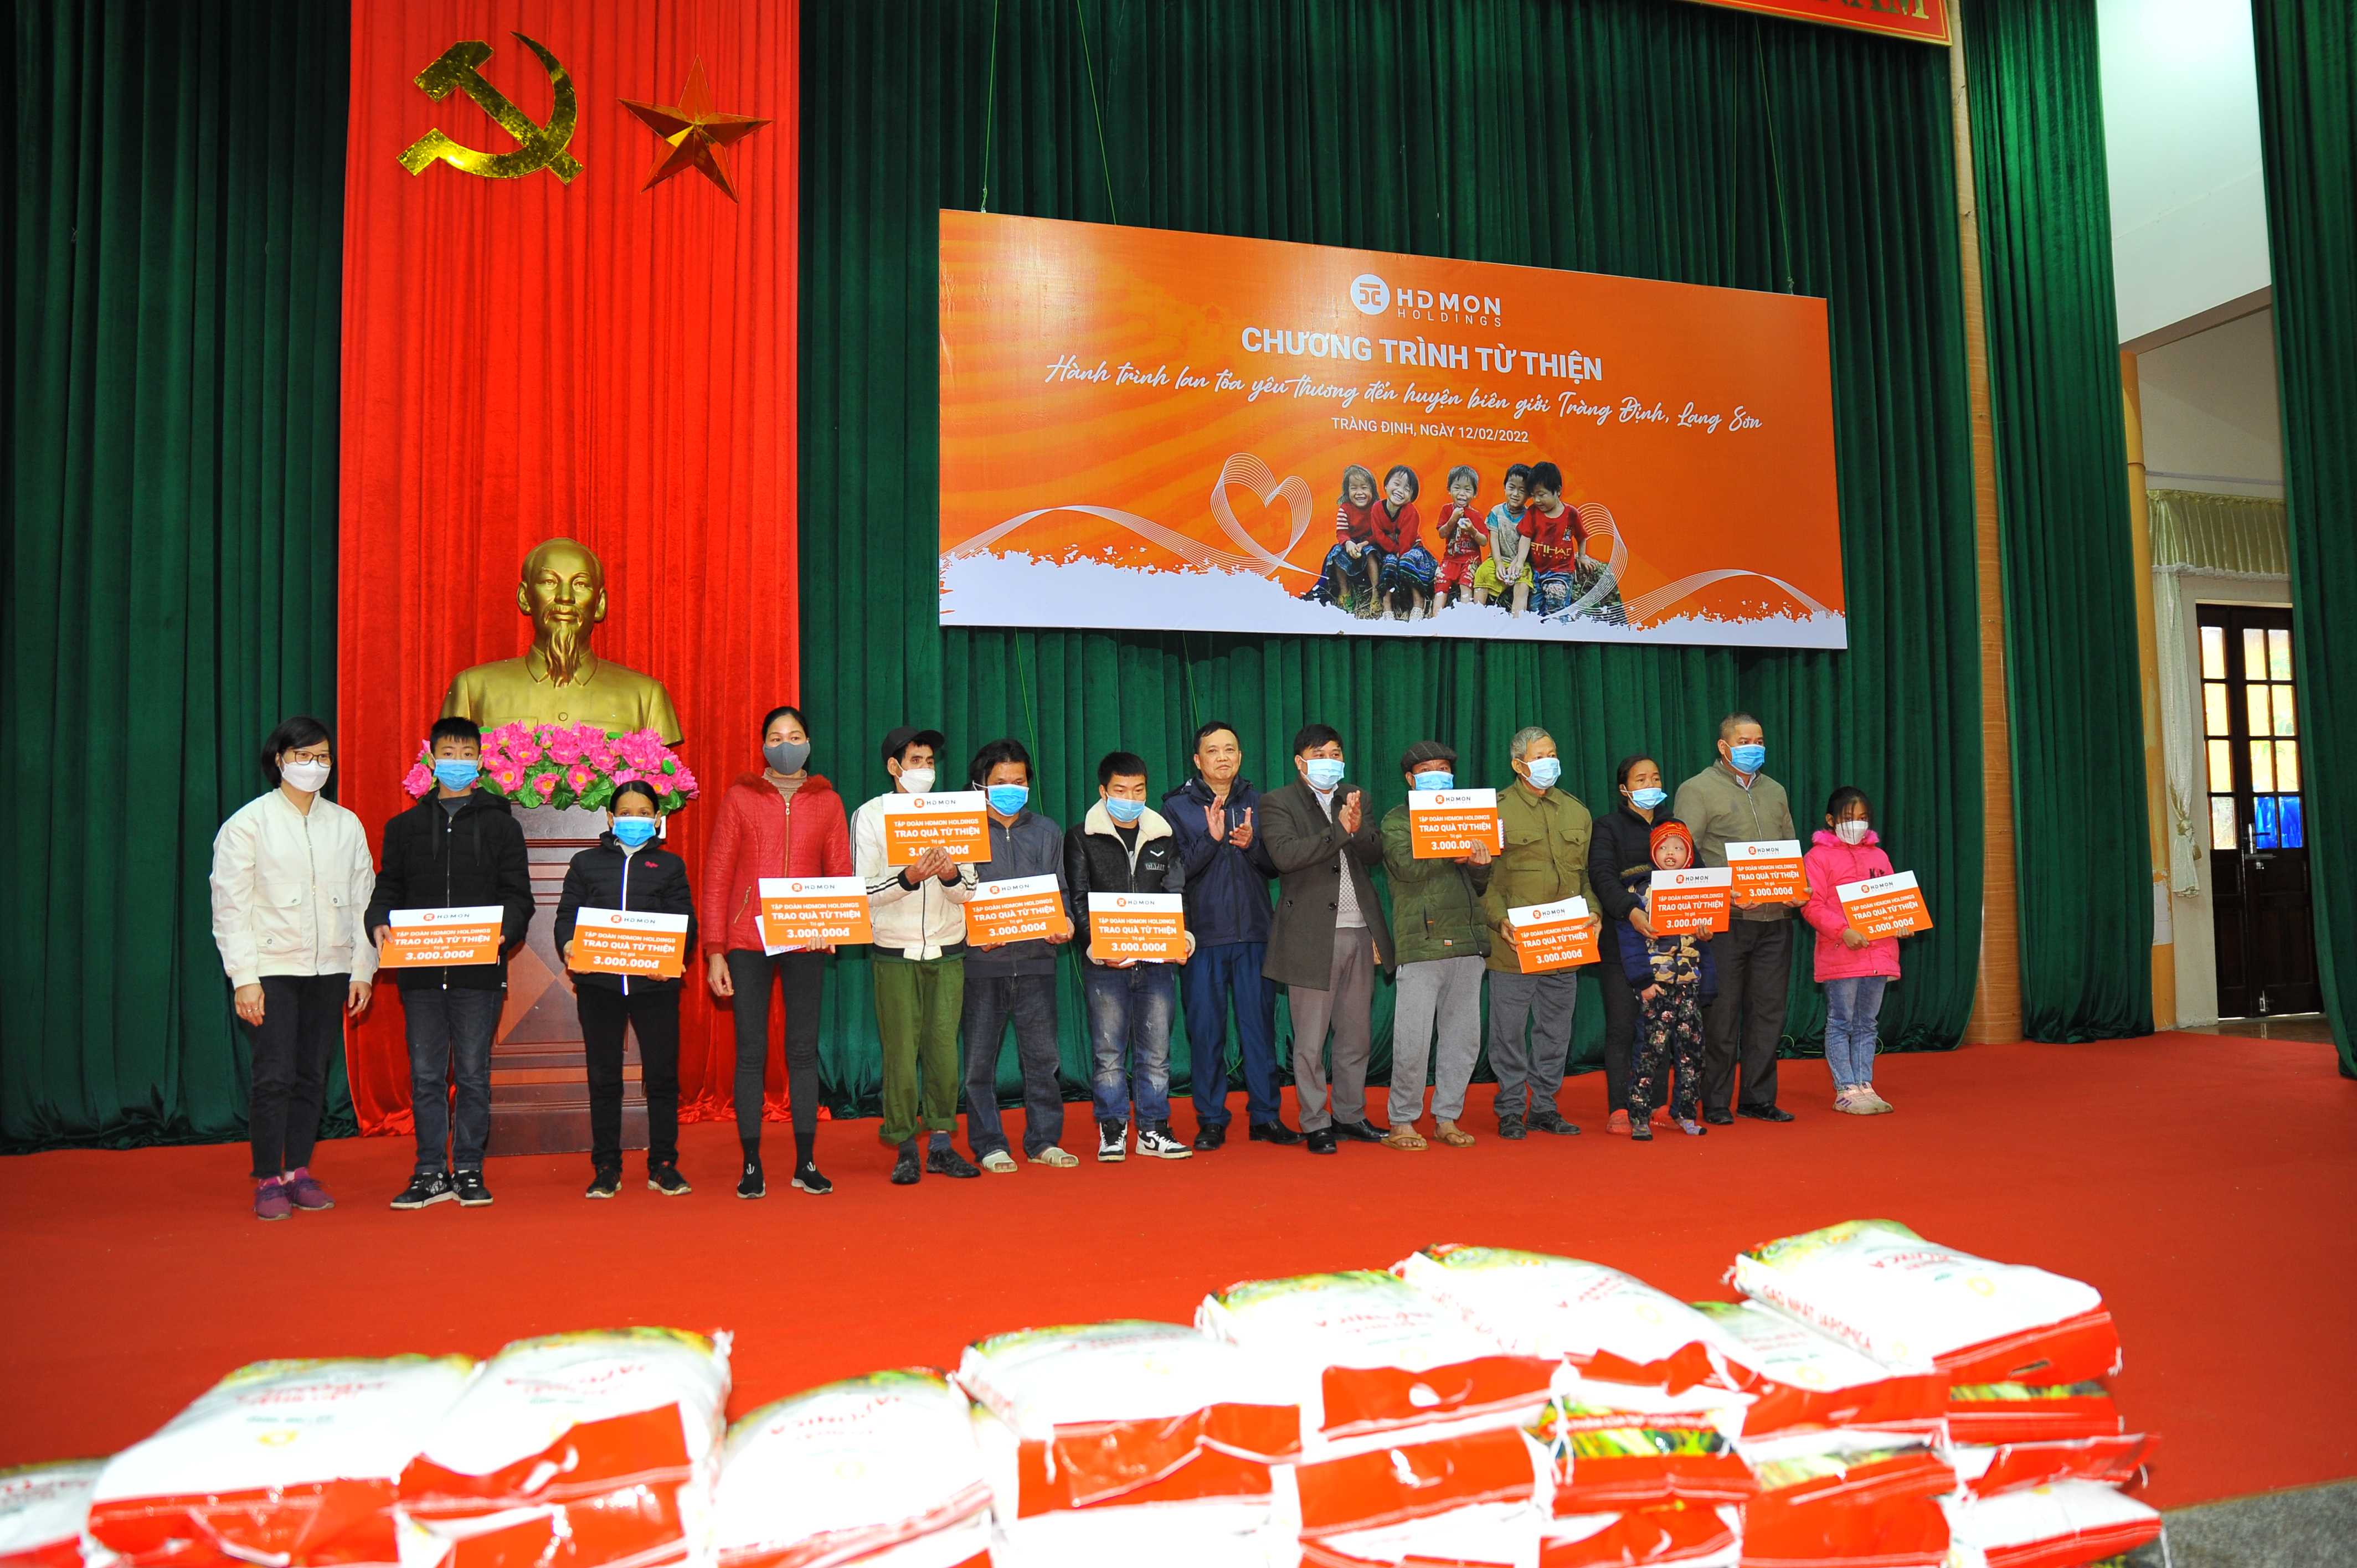 Tập đoàn HDMon Holdings trao quà cho những hoàn cảnh khó khăn trên địa bàn huyện biên giới Tràng Định, Lạng Sơn.